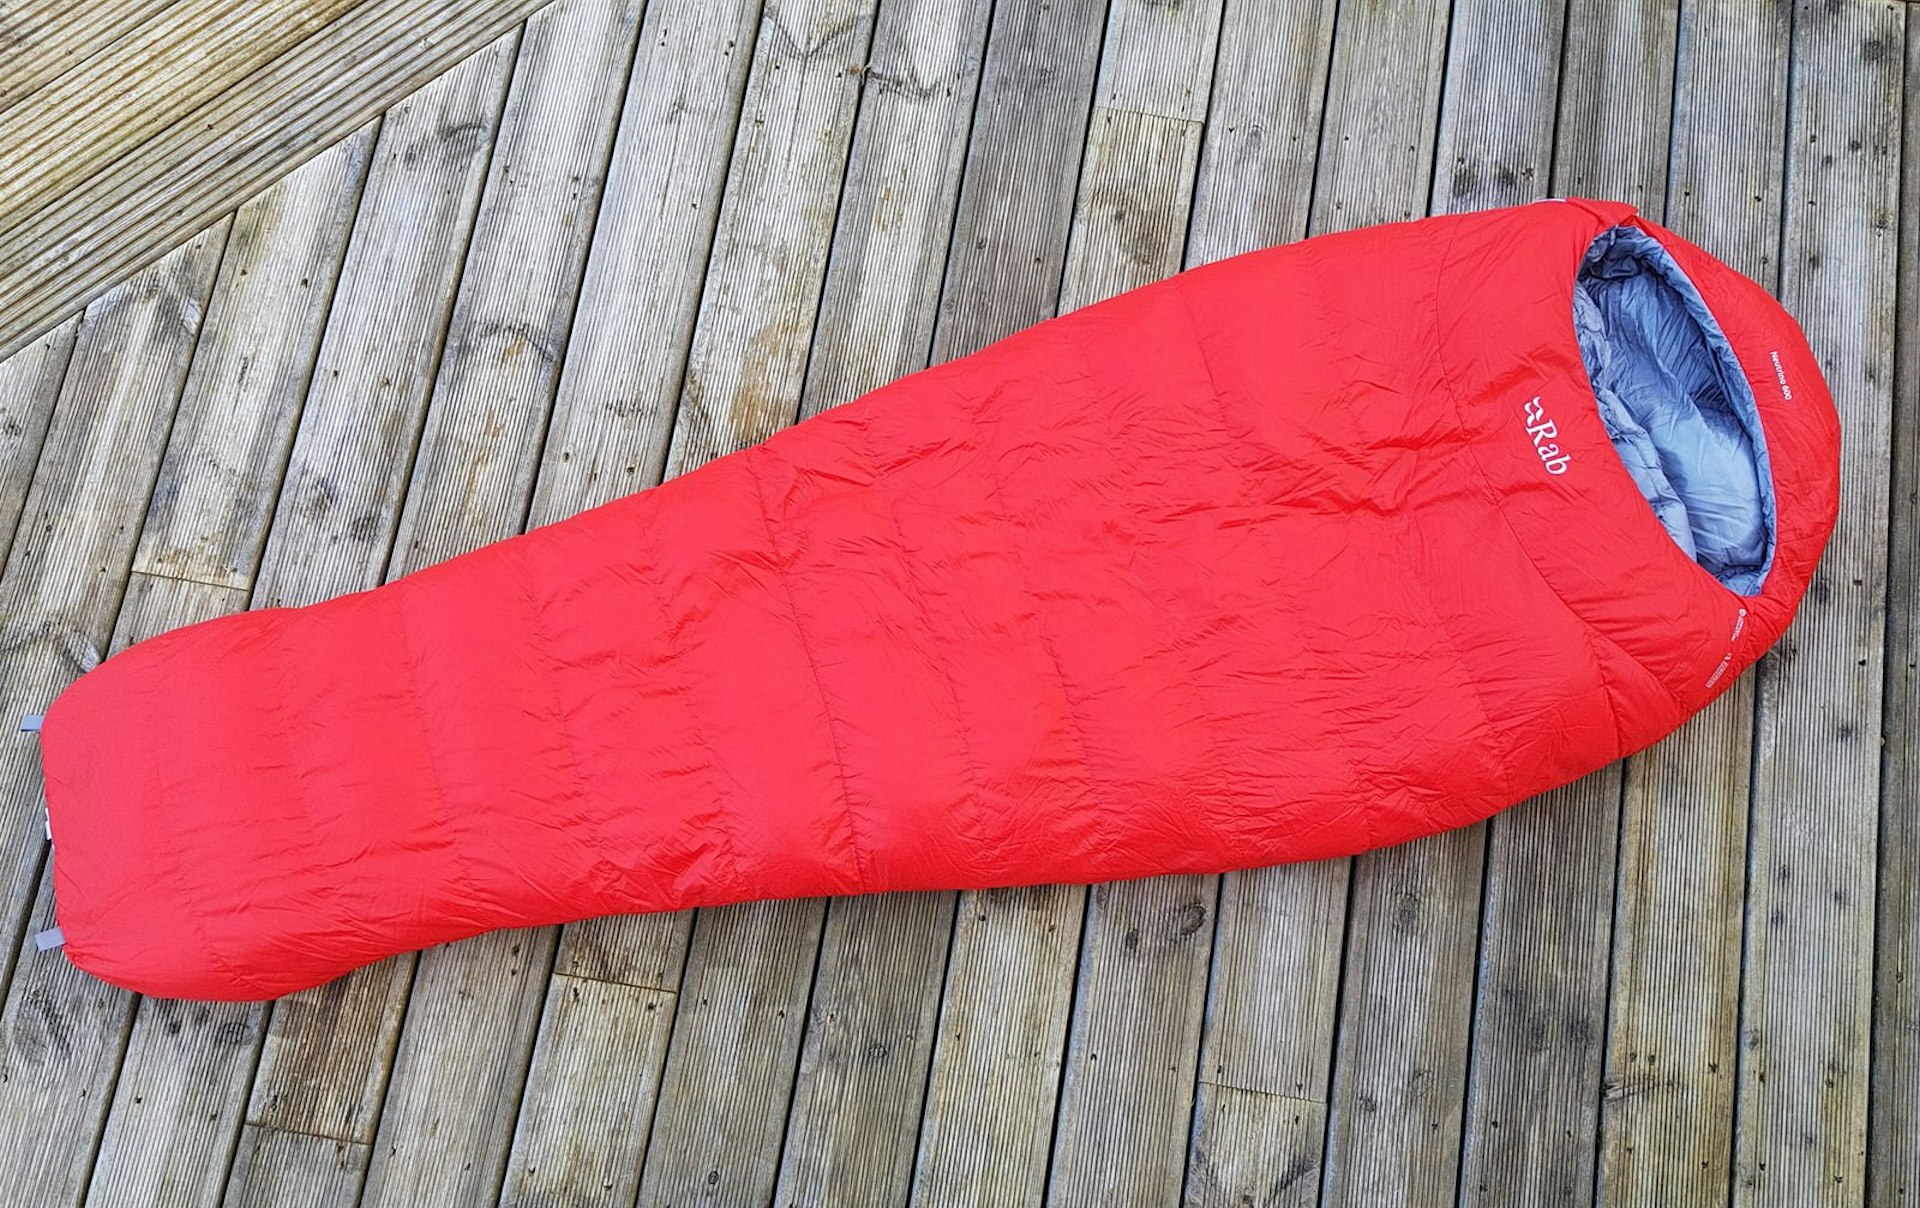 Rab Neutrino 600 sleeping bag